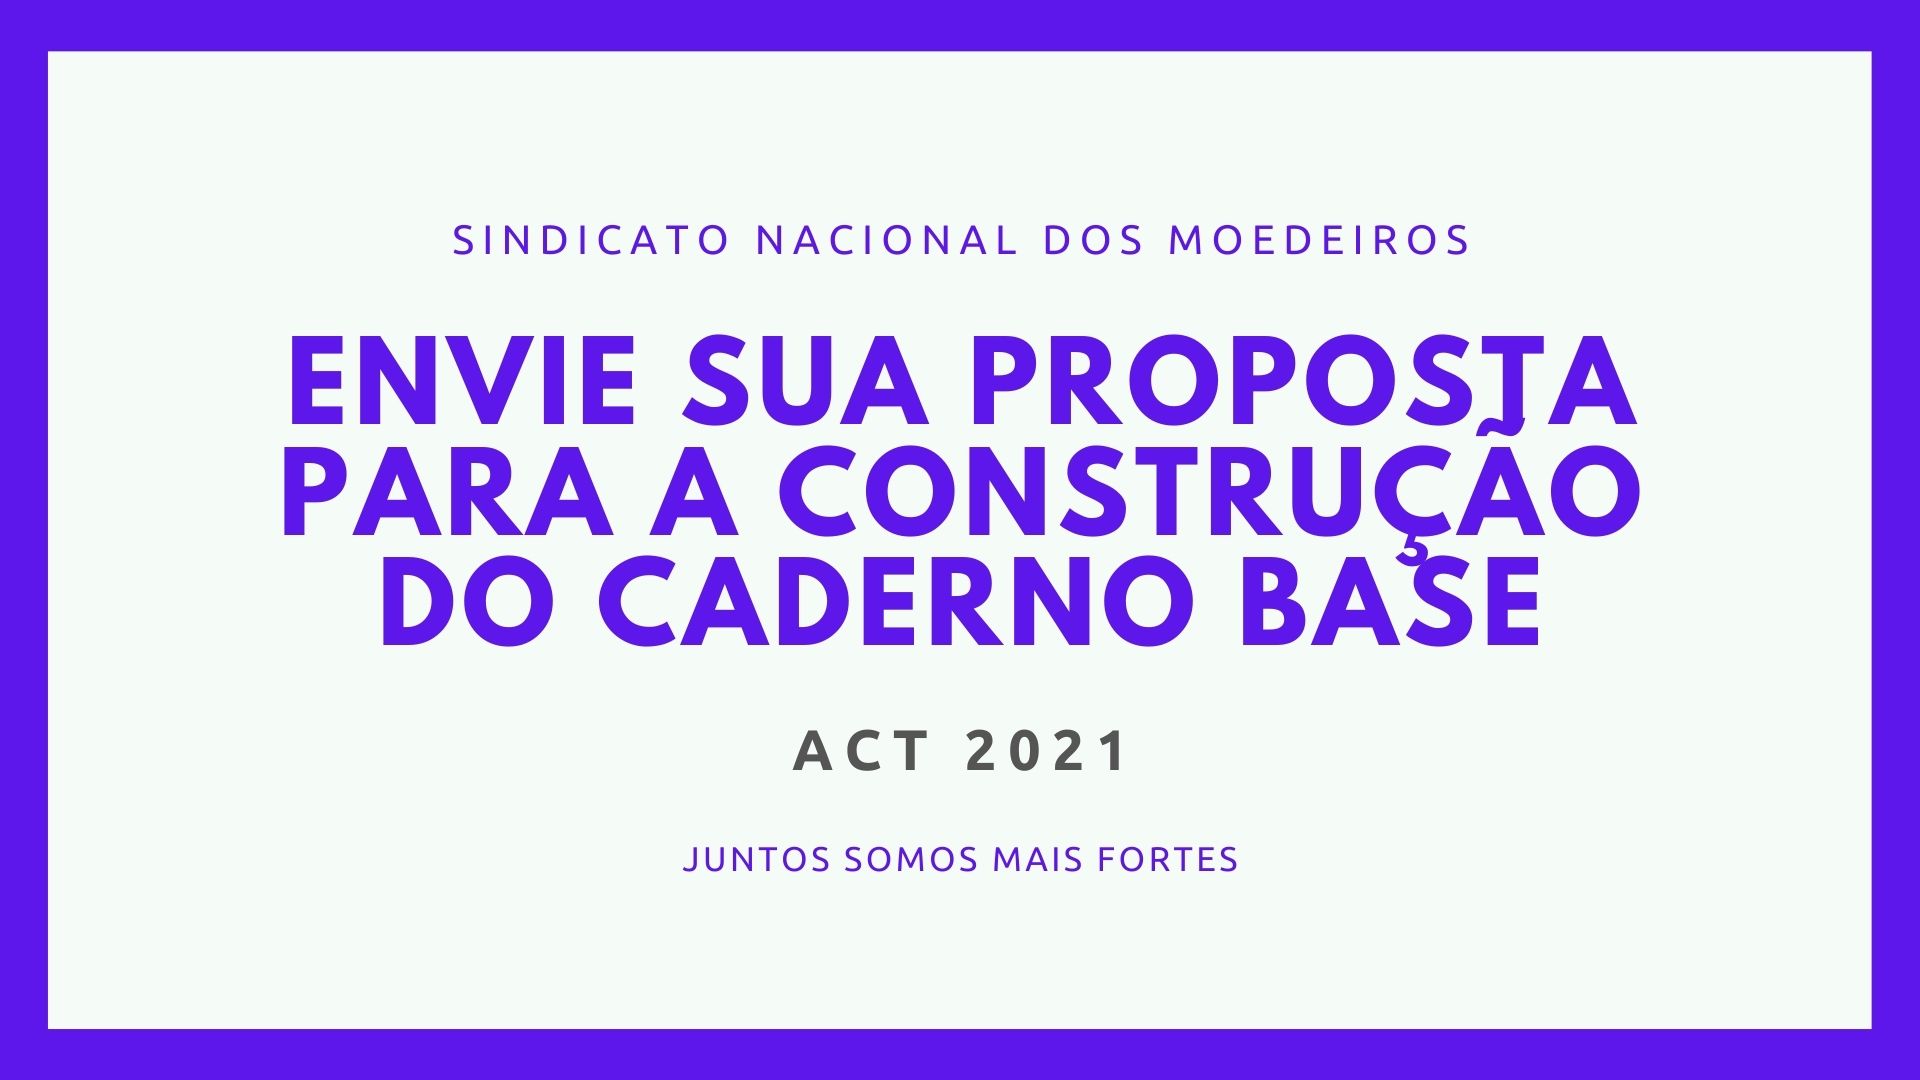 O Sindicato Nacional dos Moedeiros apresenta à categoria moedeira a proposta de Caderno Base para o ACT 2021.